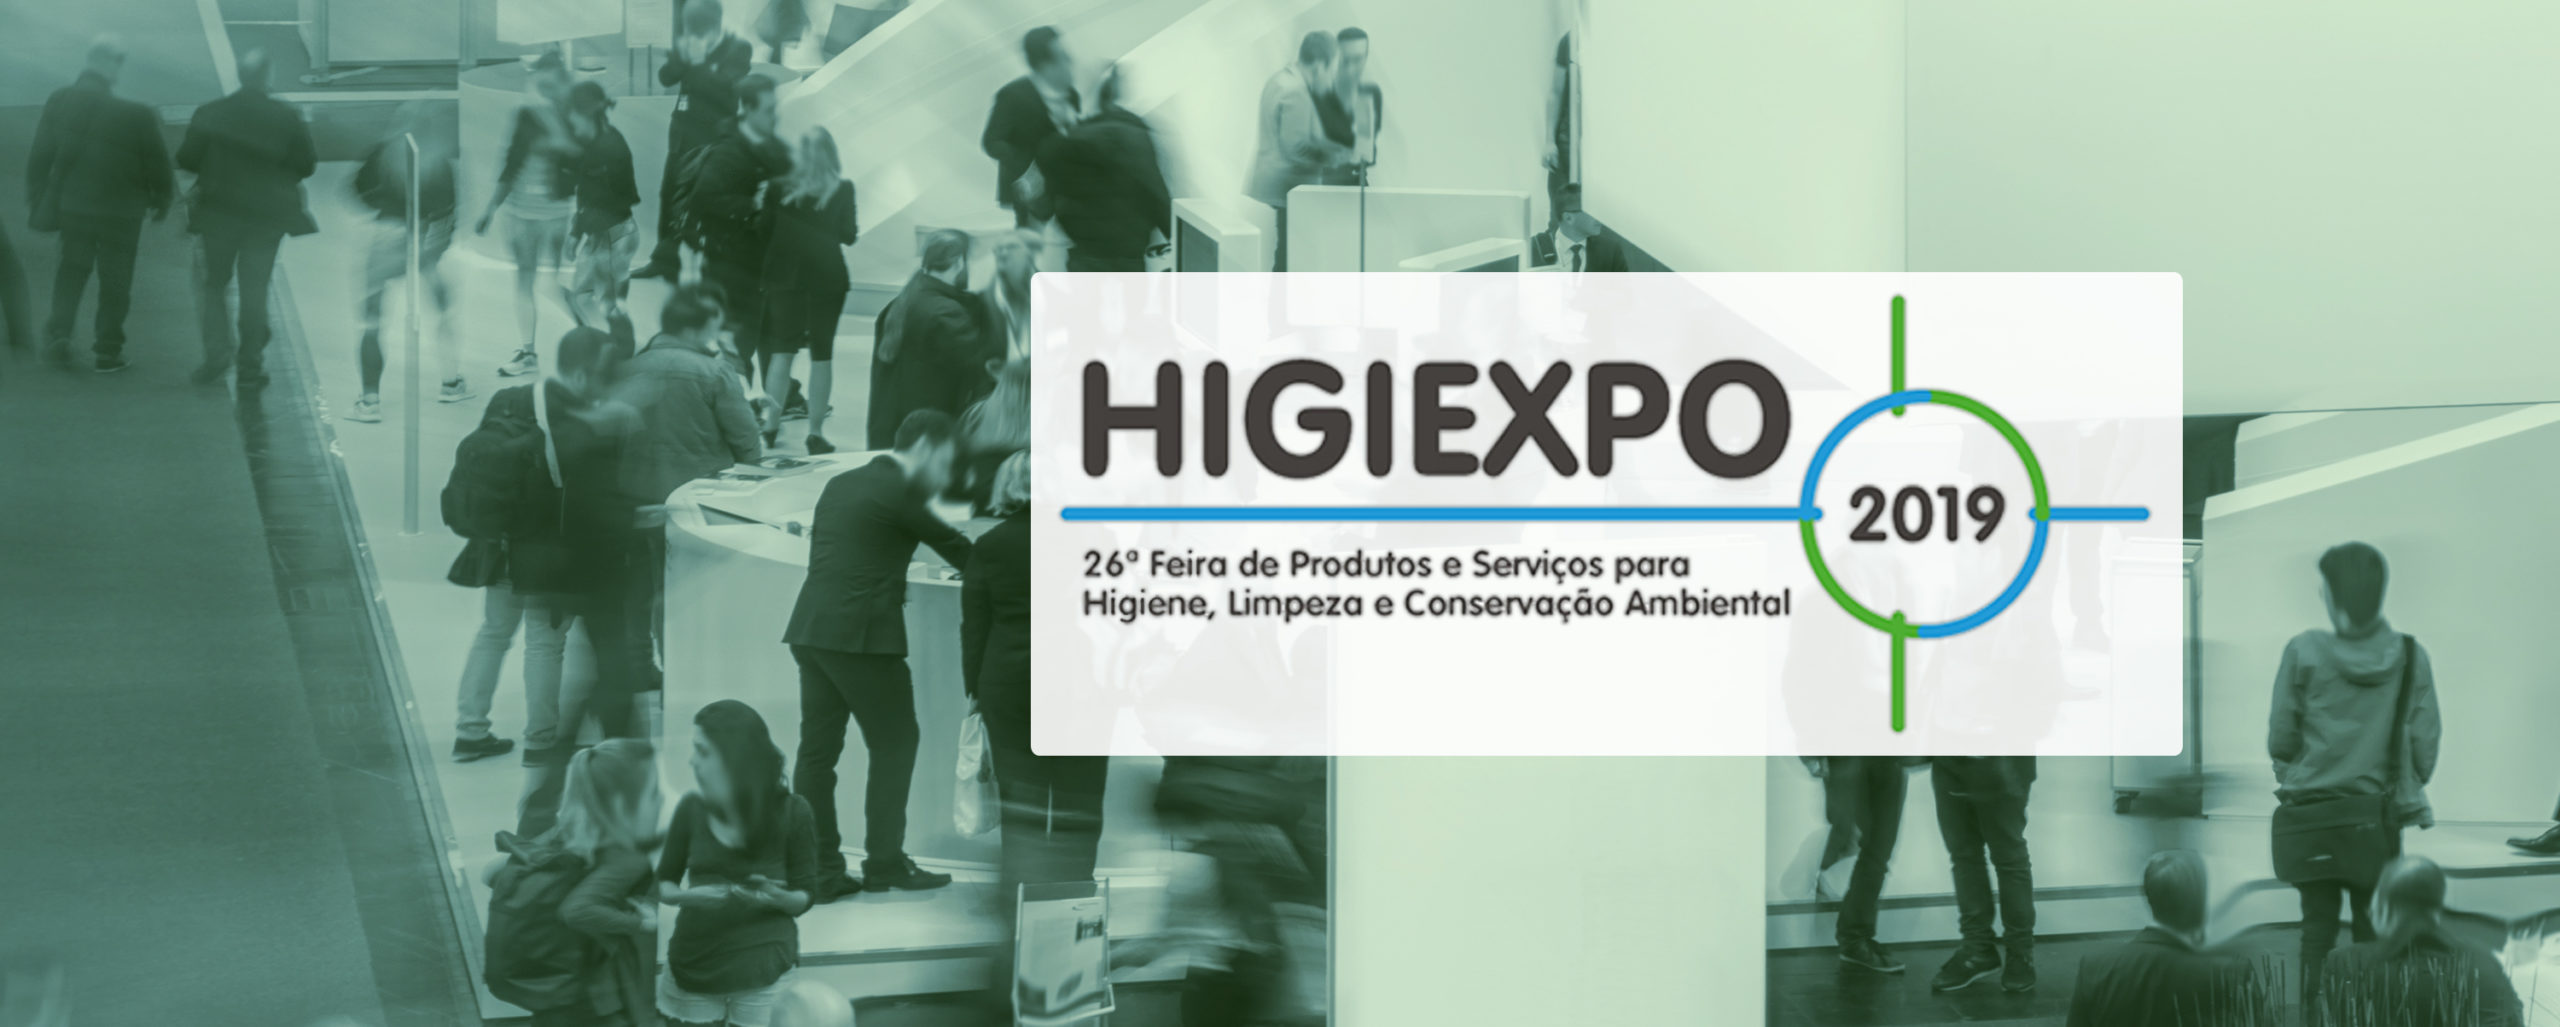 Higiexpo 2019 – Venha nos encontrar!